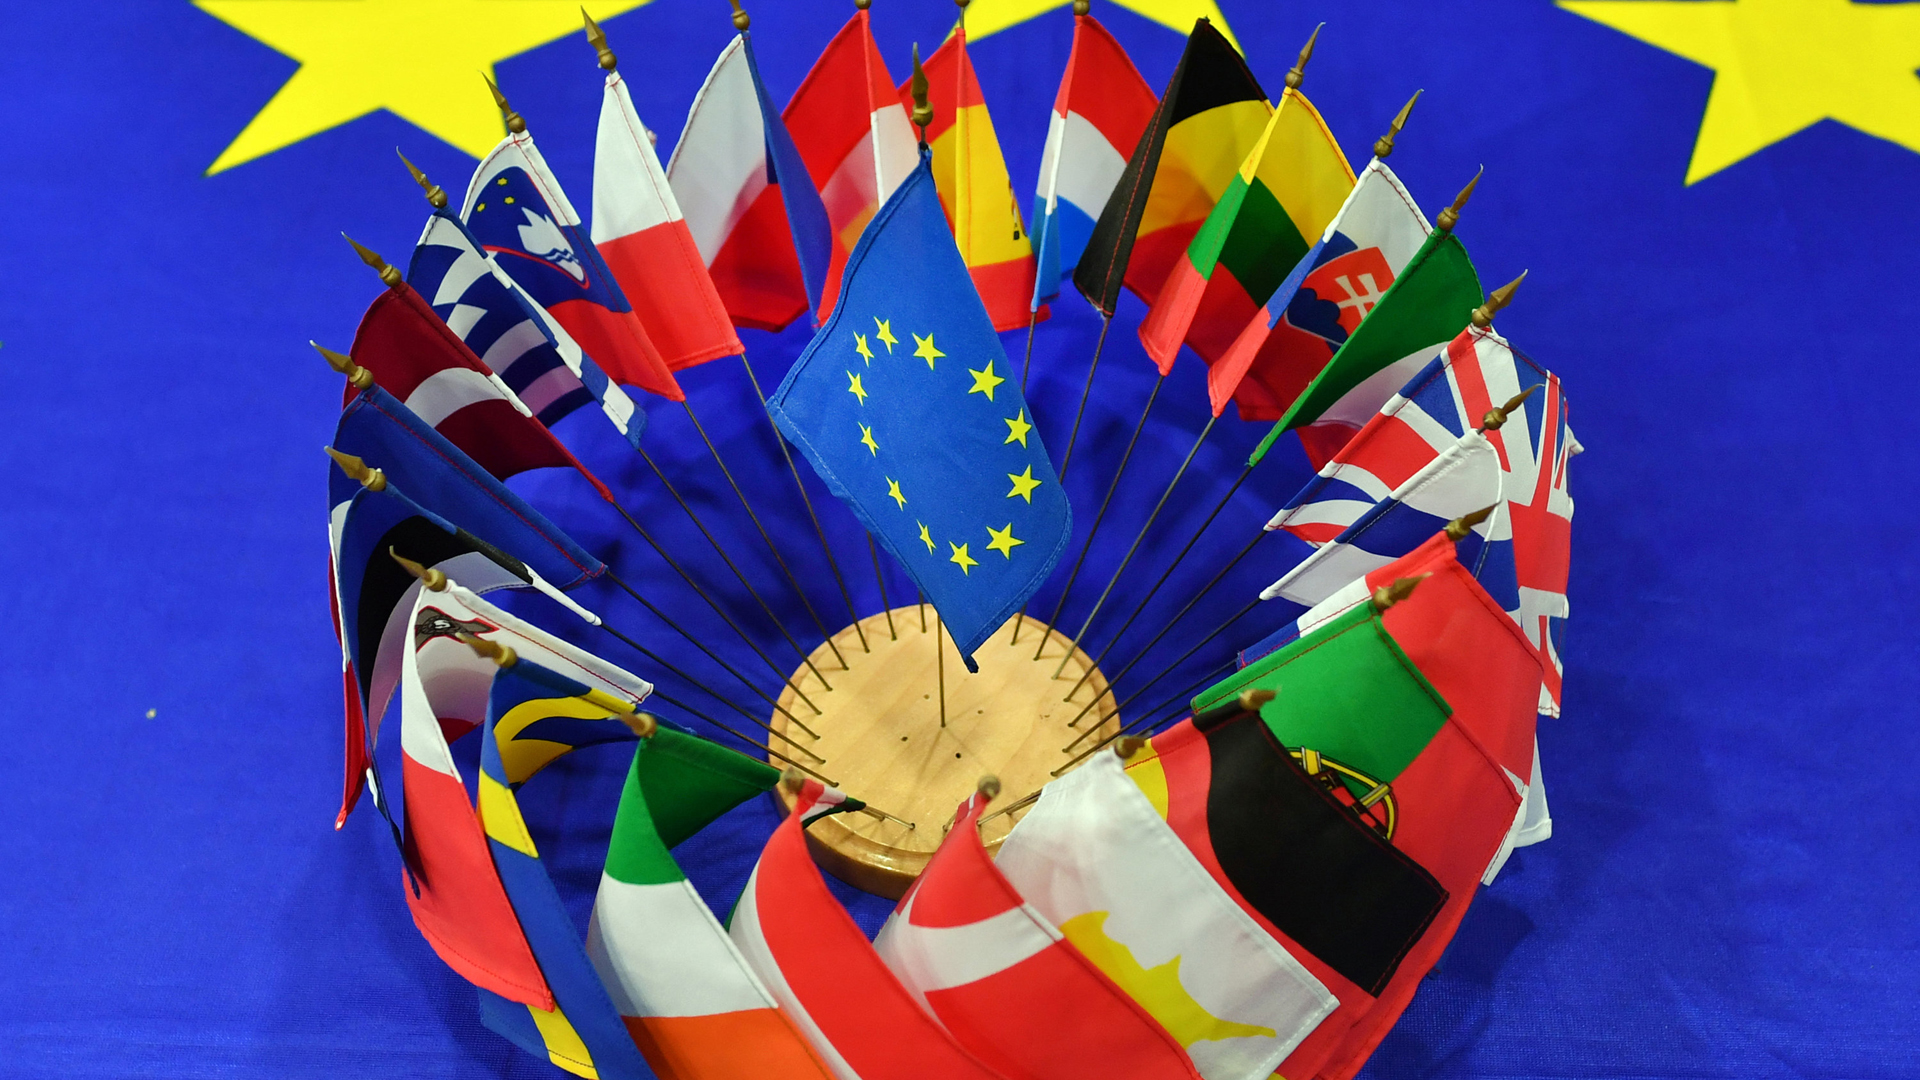 Fahnen der EU-Staaten gruppieren sich rund um eine EU-Flagge | dpa